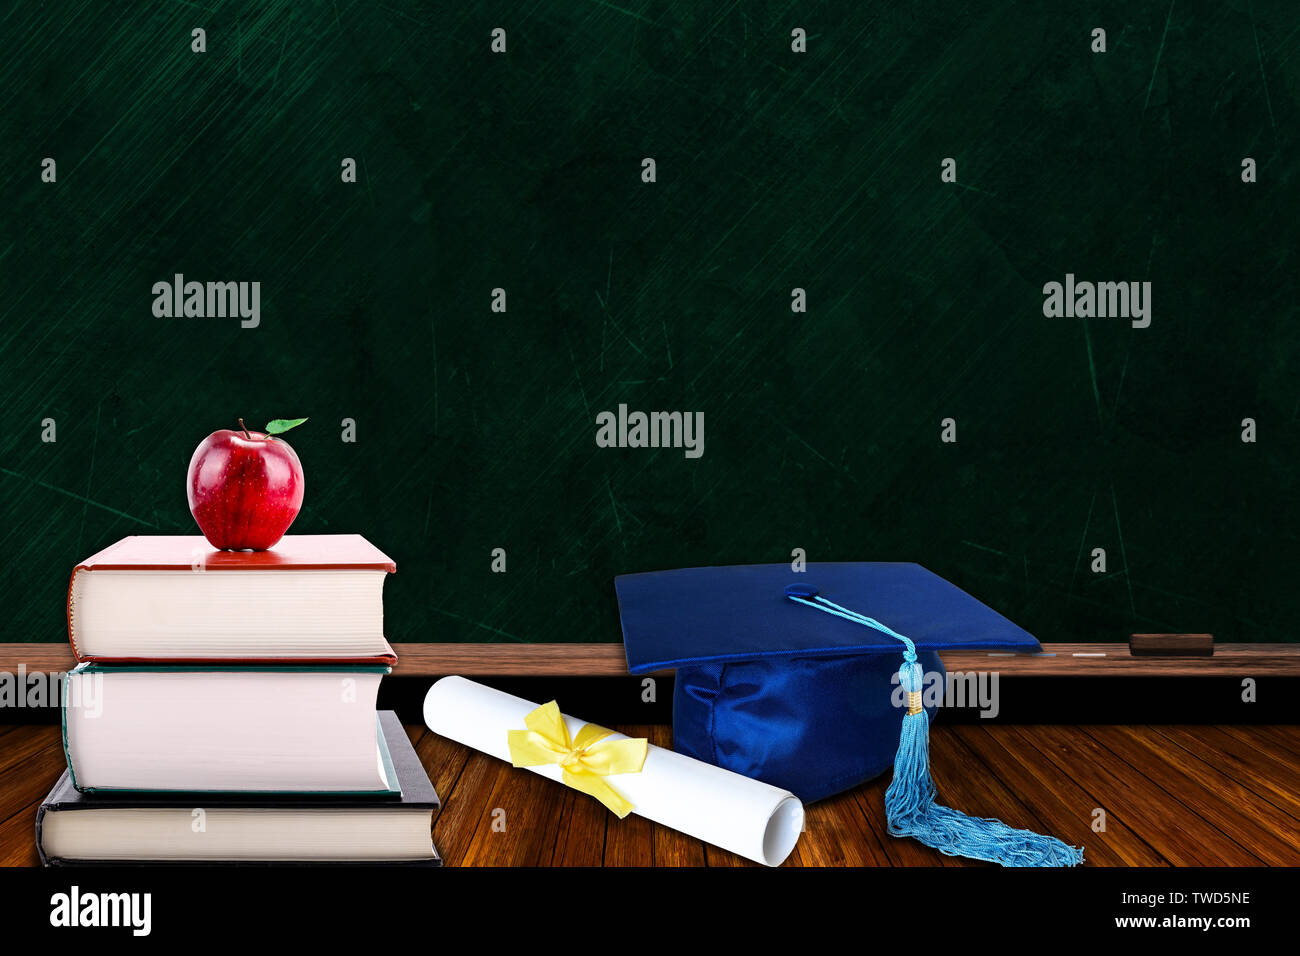 Concept de l'éducation avec graduation hat bleu et de diplôme et pile de livres avec apple sur tableau noir l'arrière-plan. L'espace de copie sur tableau. Banque D'Images